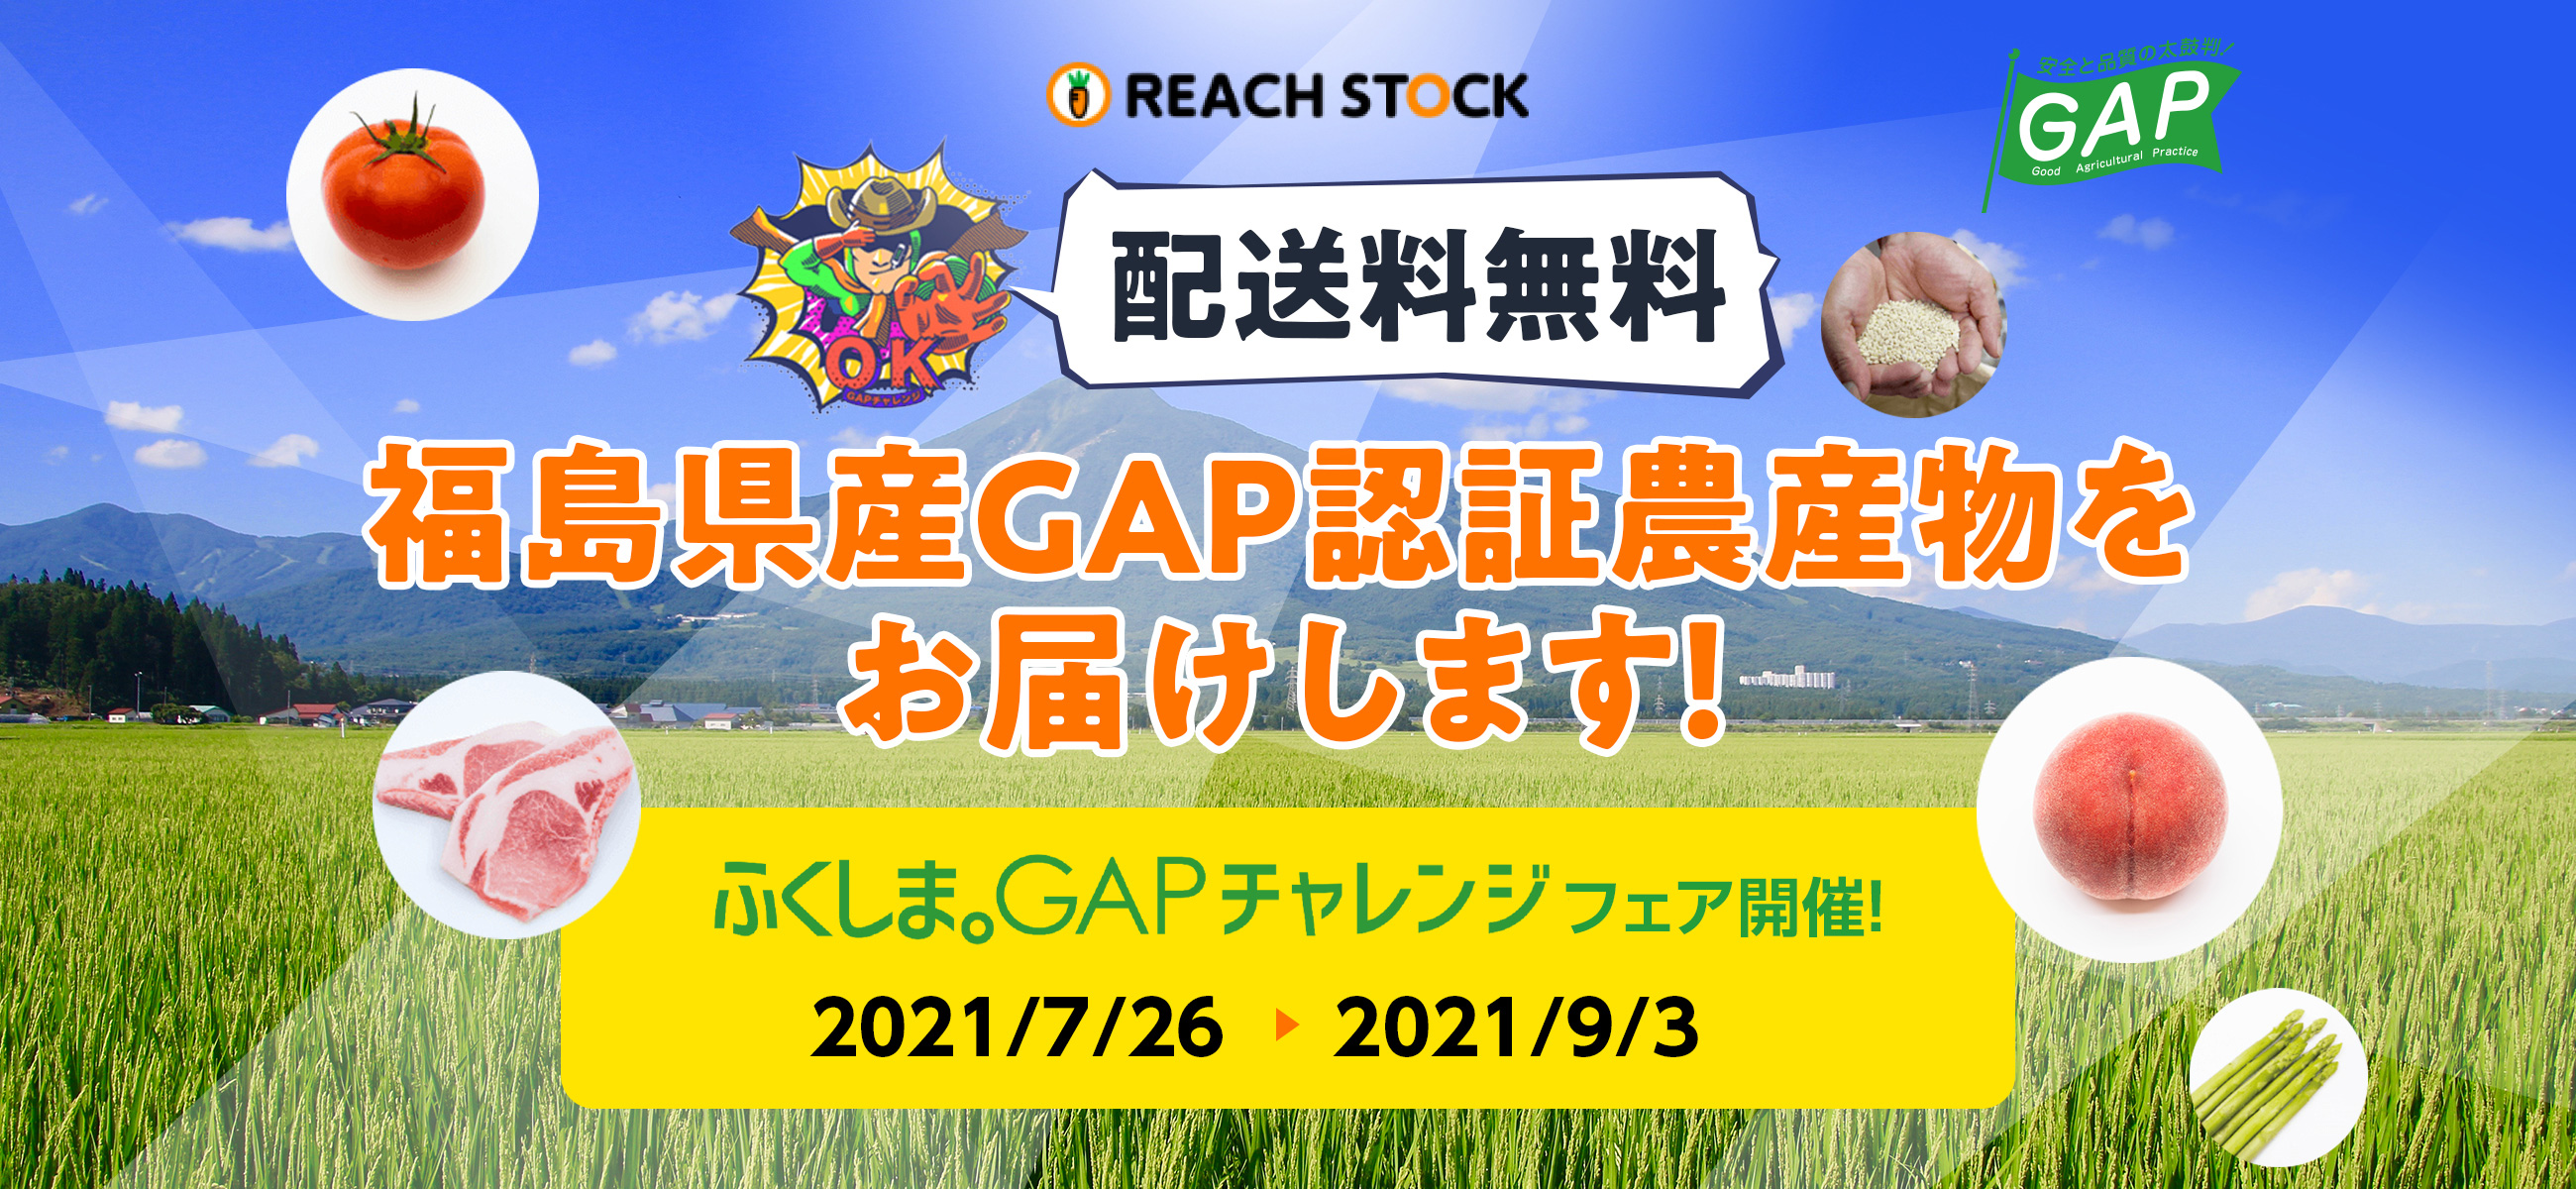 配送料無料　福島県産GAP認定食材をお届けします！　ふくしま。GAPチャレンジフェア開催！2021/7/26▶2021/9/3